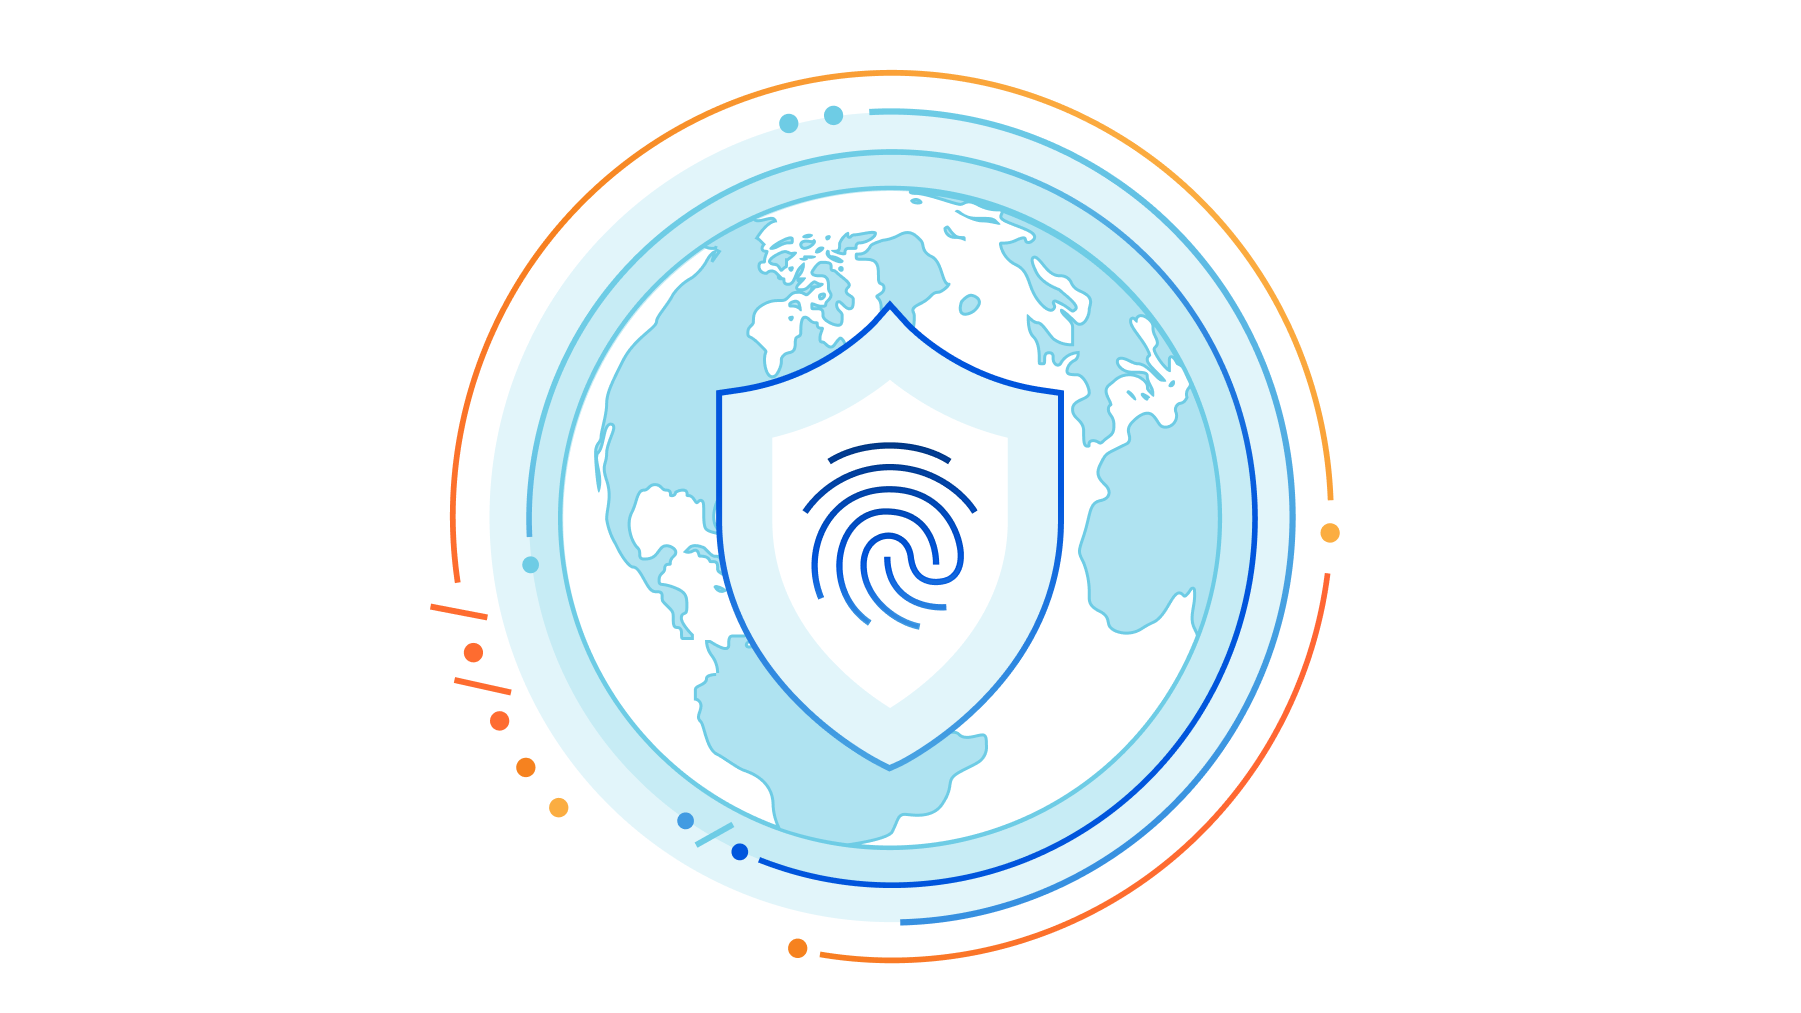 Rumo a uma estrutura global para fluxos de dados internacionais e proteção da privacidade